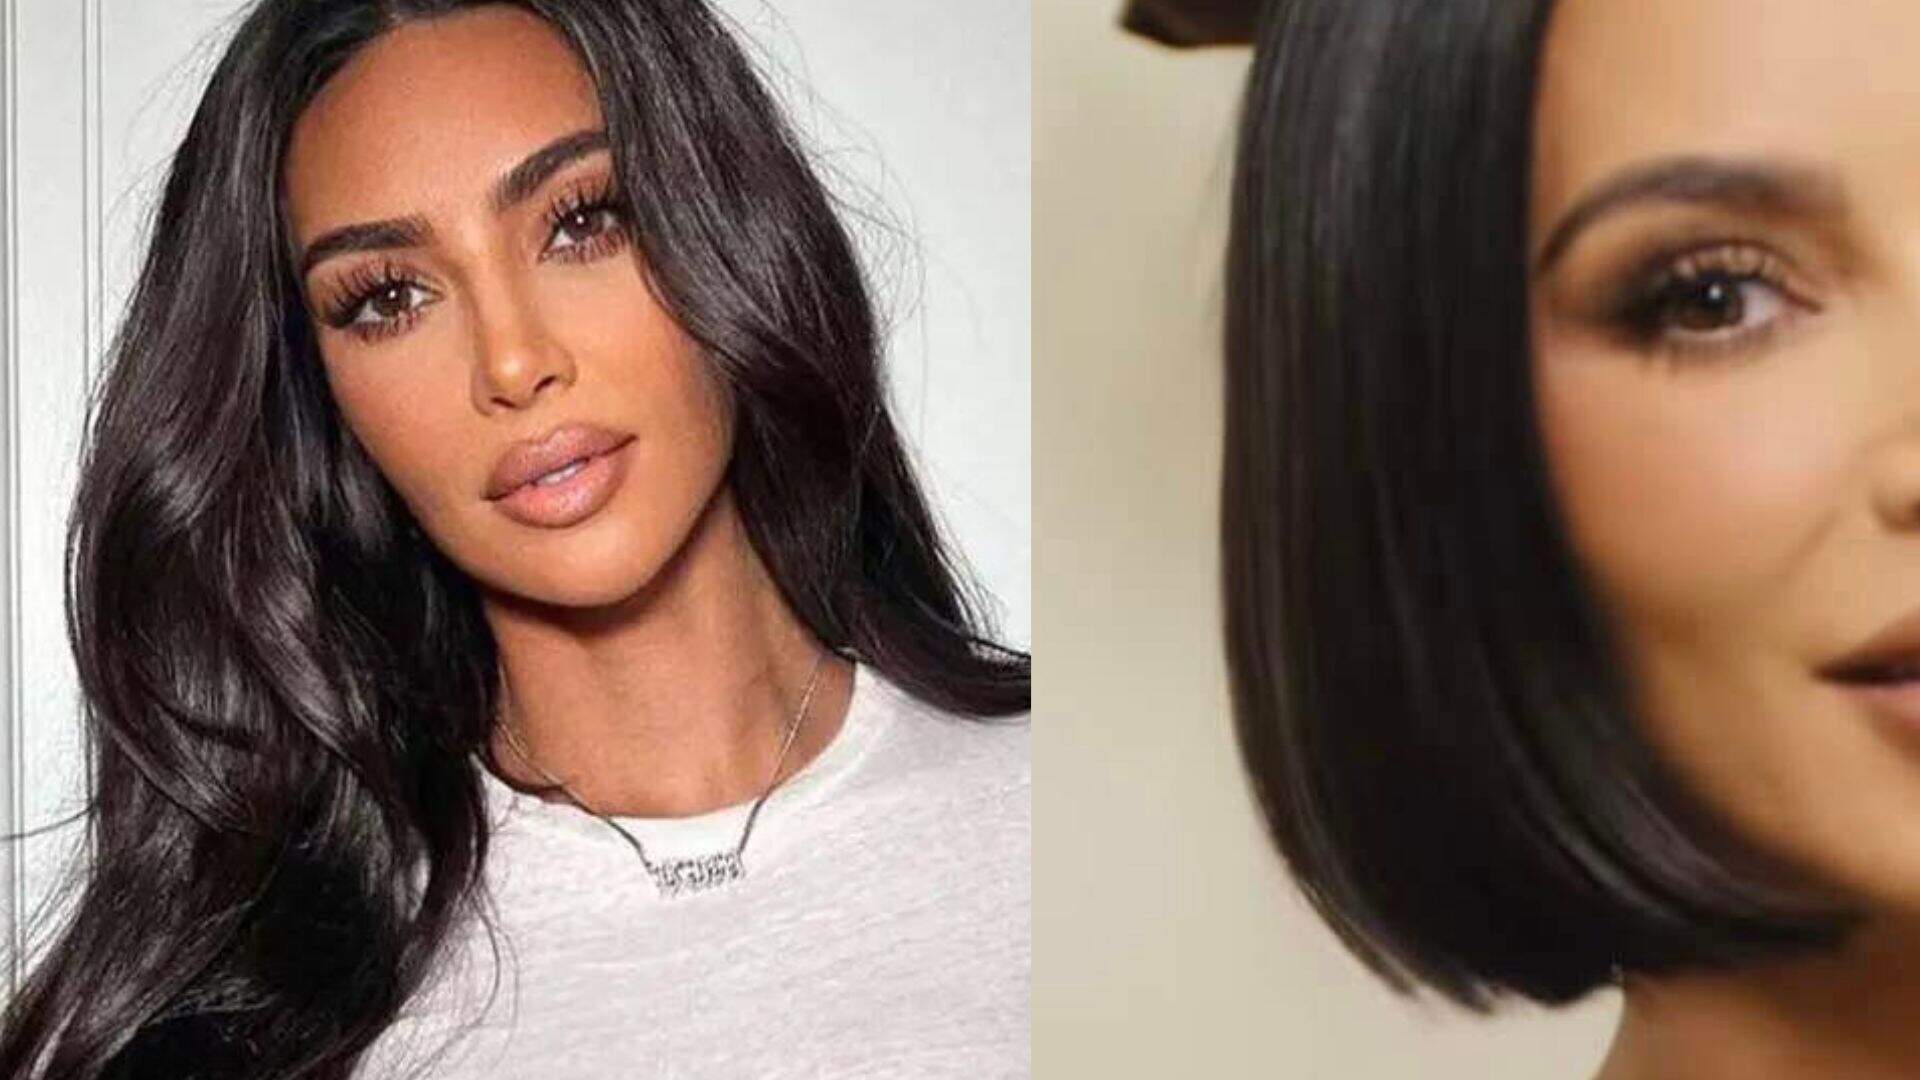 Radicalizou! Kim Kardashian surge com o cabelo bem curtinho e choca fãs - Metropolitana FM